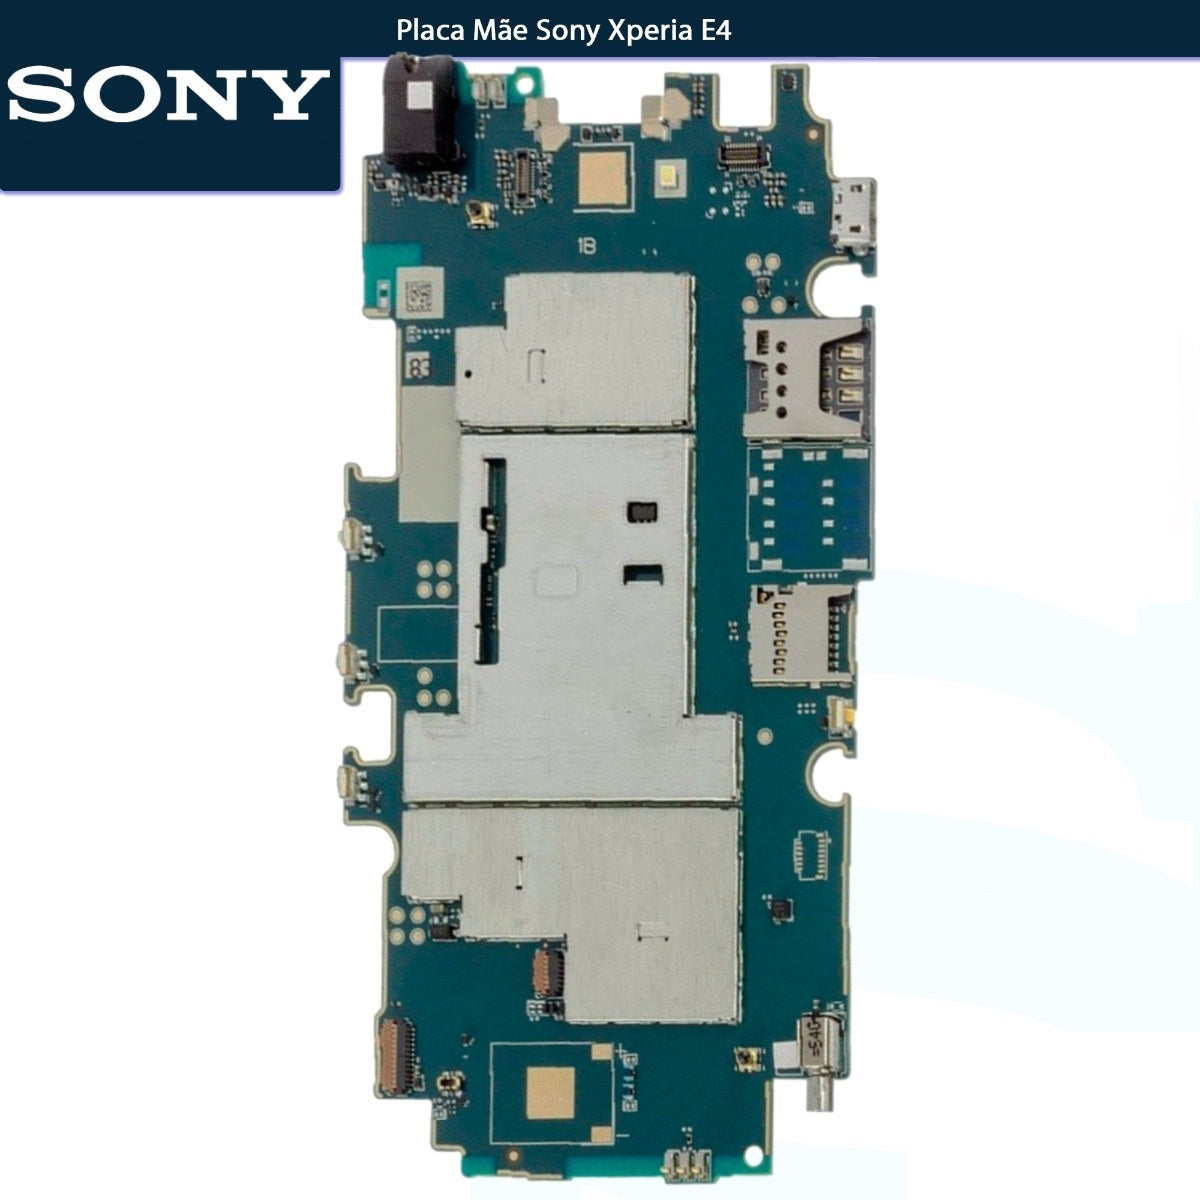 Placa Mãe Sony Xperia E4 E2105 1GB RAN 8GB 1.3Ghz Quad-Core ARM Cortex-A7 - Original